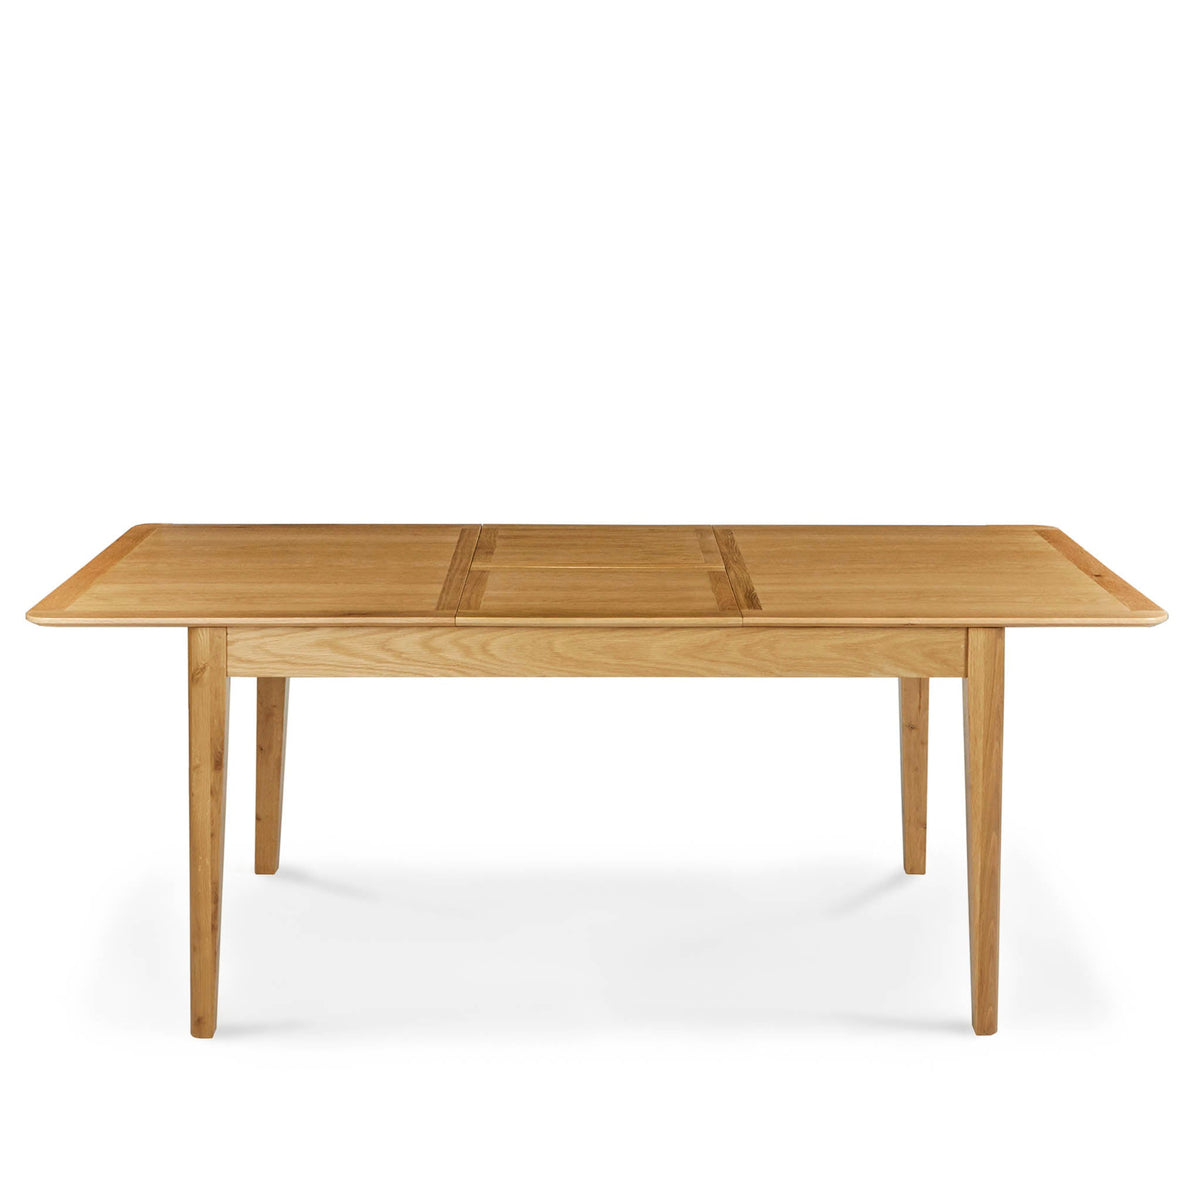 Alba Oak 150-200cm Extending Table by Roseland Furniture